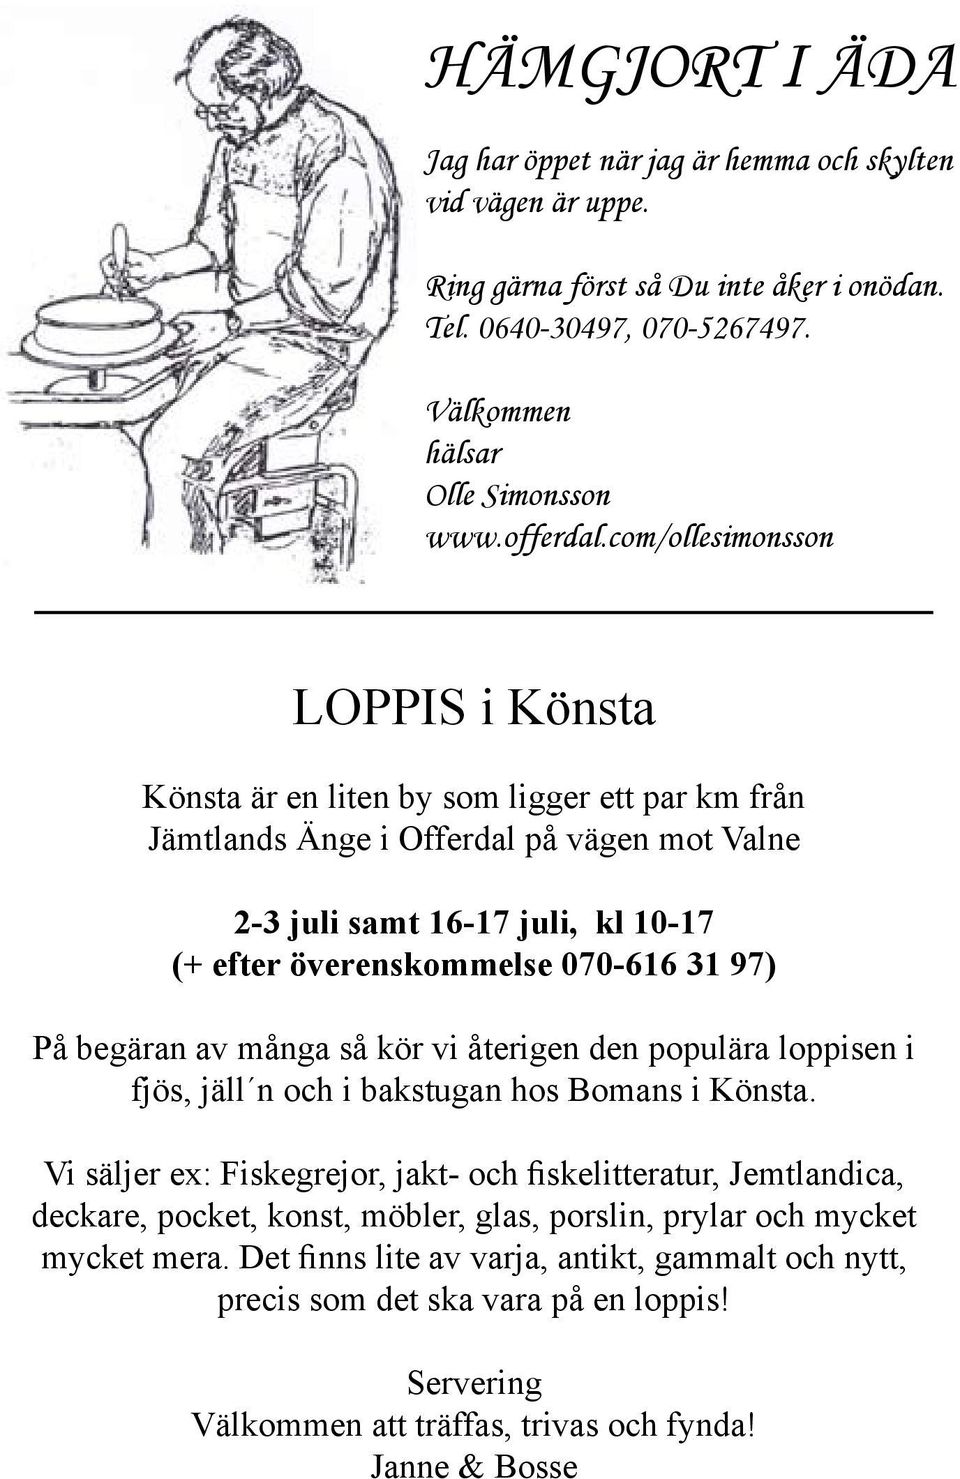 97) På begäran av många så kör vi återigen den populära loppisen i fjös, jäll n och i bakstugan hos Bomans i Könsta.